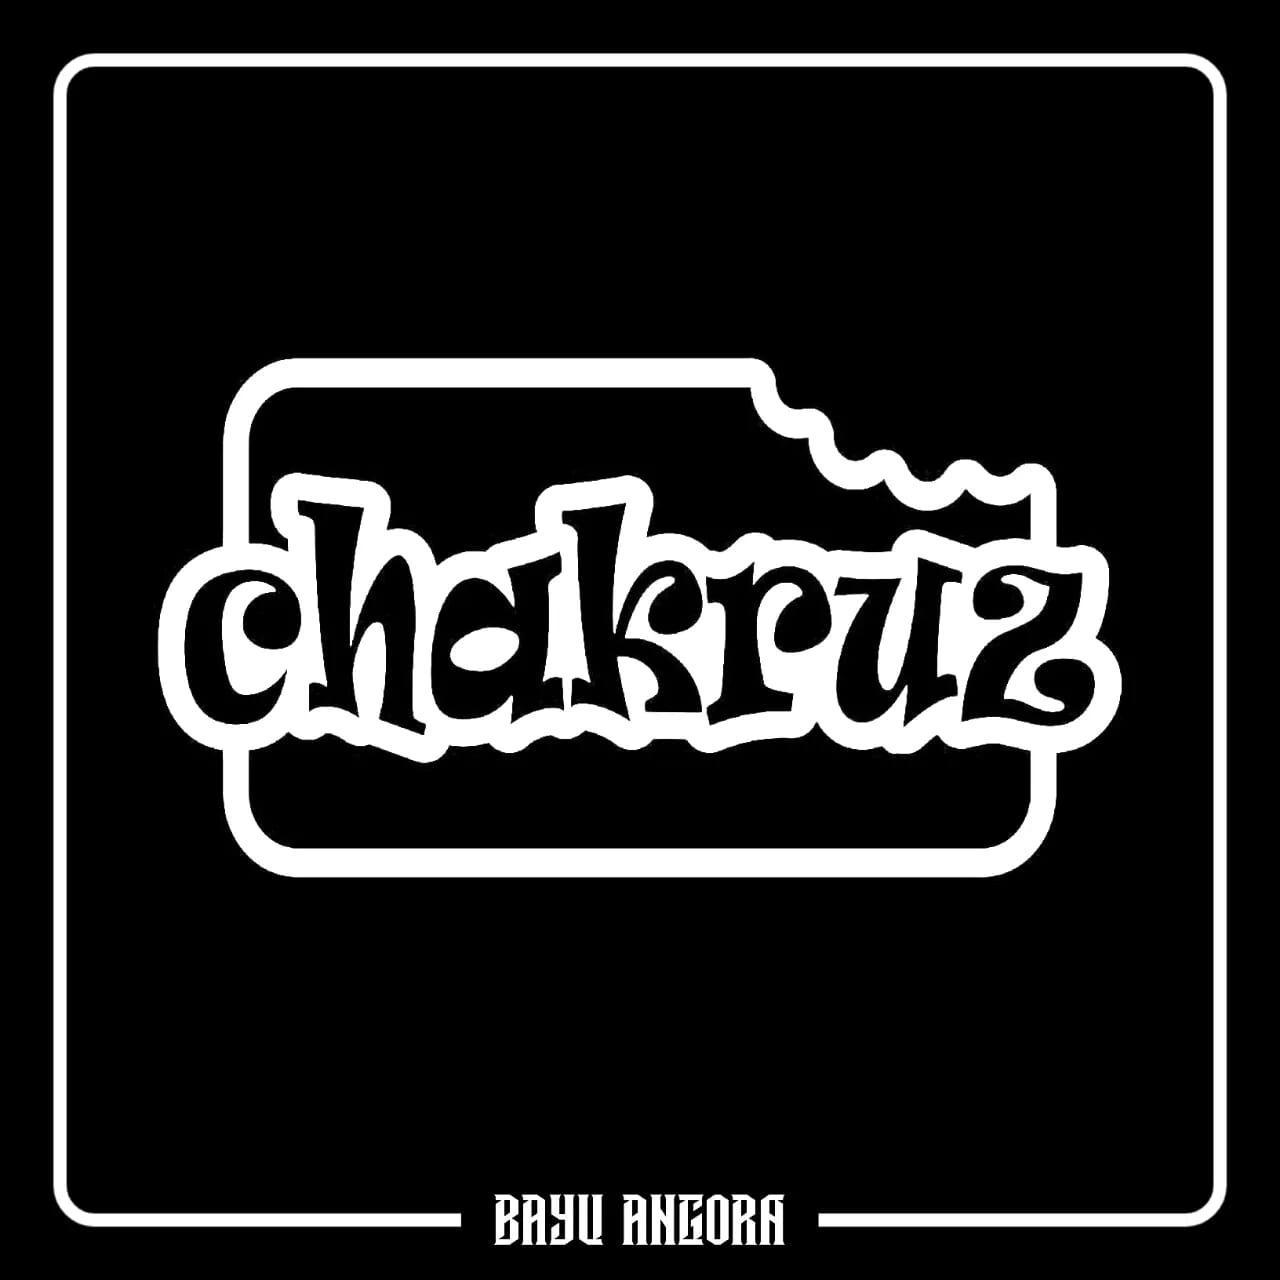 Logo - Chakruz - Bayu Angora